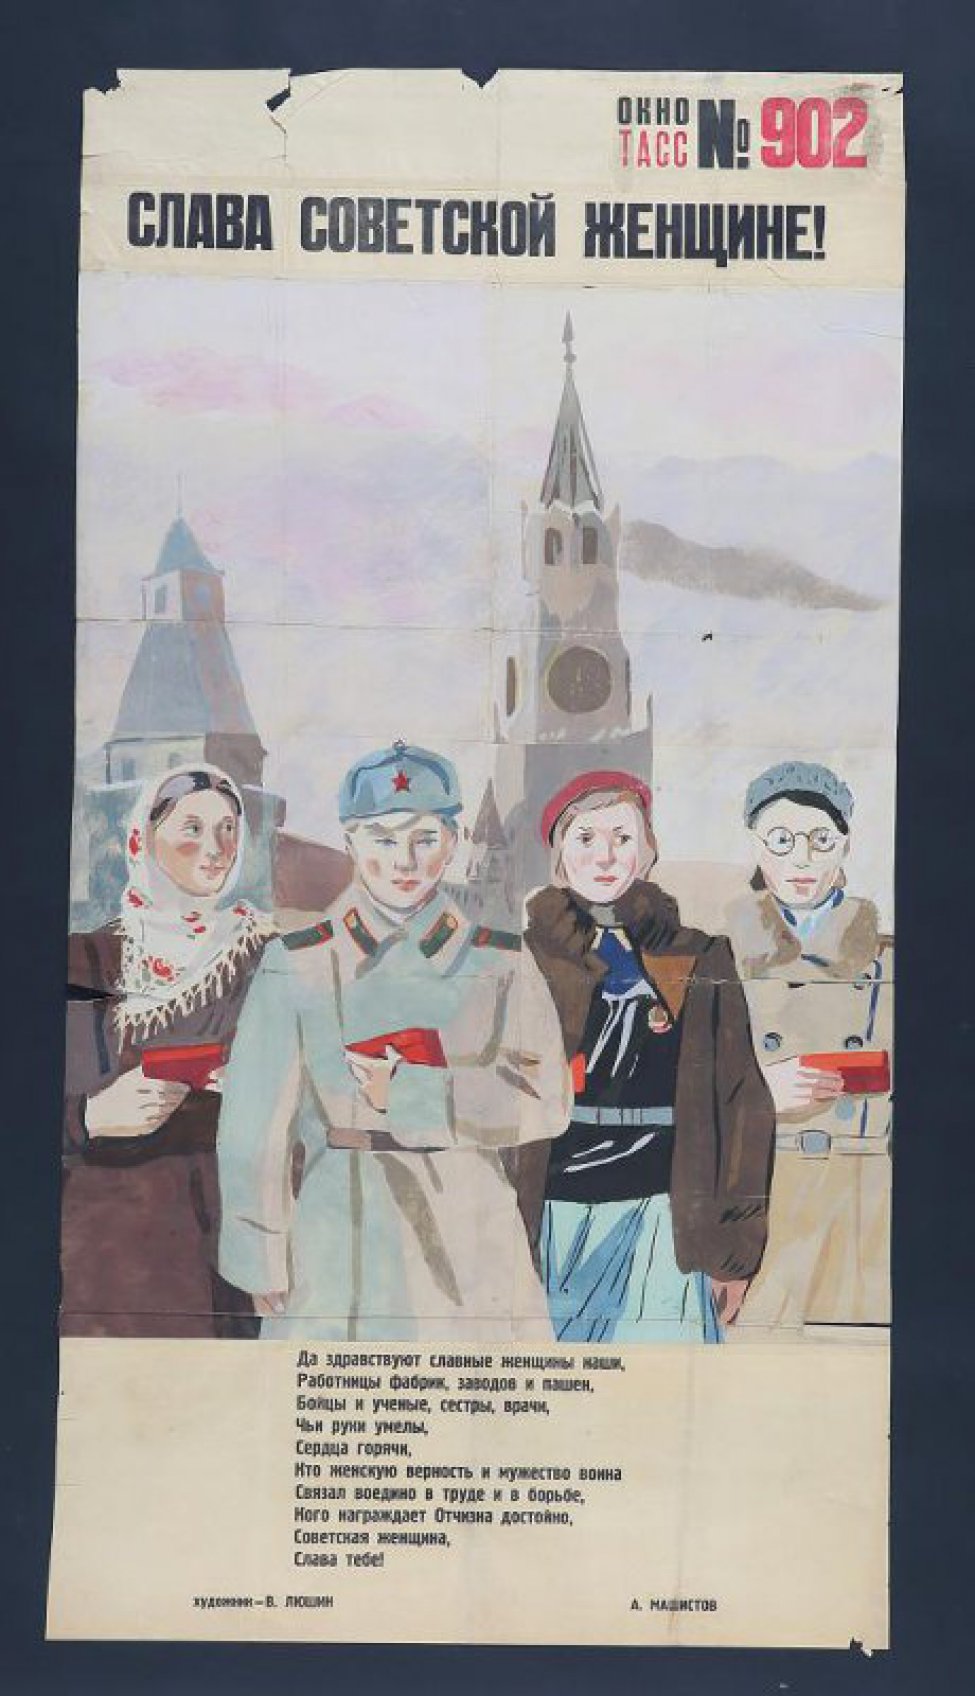 Изображено: четыре женщины на фоне Кремлевской башни с орденскими коробочками в руках, текст А.Машистова:" Да здравствуют славные женщины наши!" работницы фабрик, заводов и пашен..."